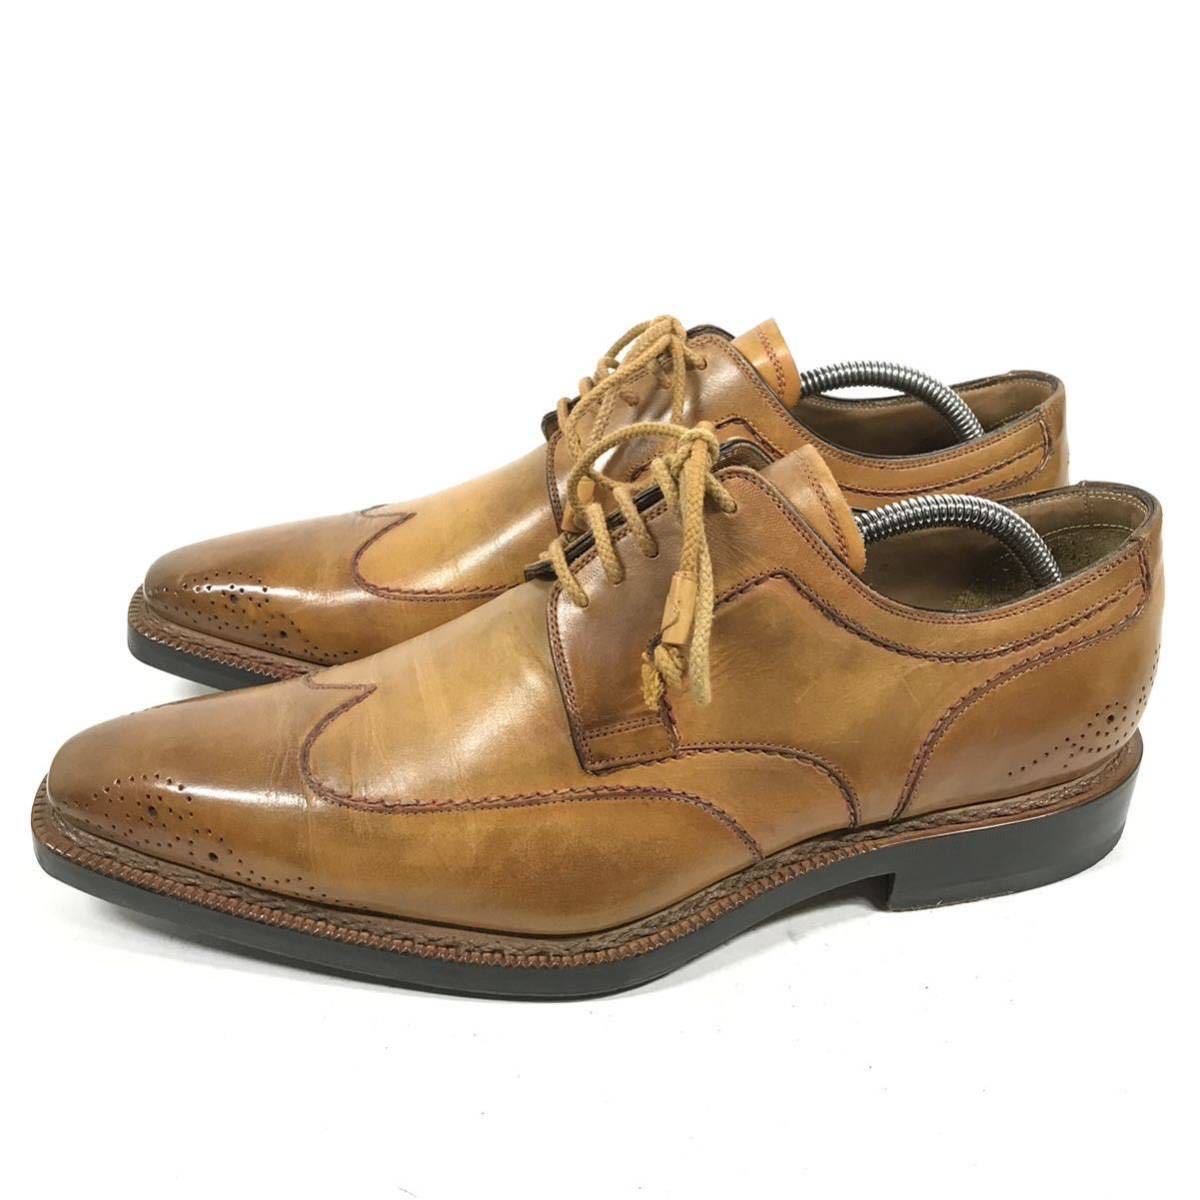 【ステファノブランキーニ】本物 STEFANO BRANCHINI 靴 27.5cm 茶 ビジネスシューズ 外羽根式 本革 レザー 男性用 メンズ イタリア製 9の画像6